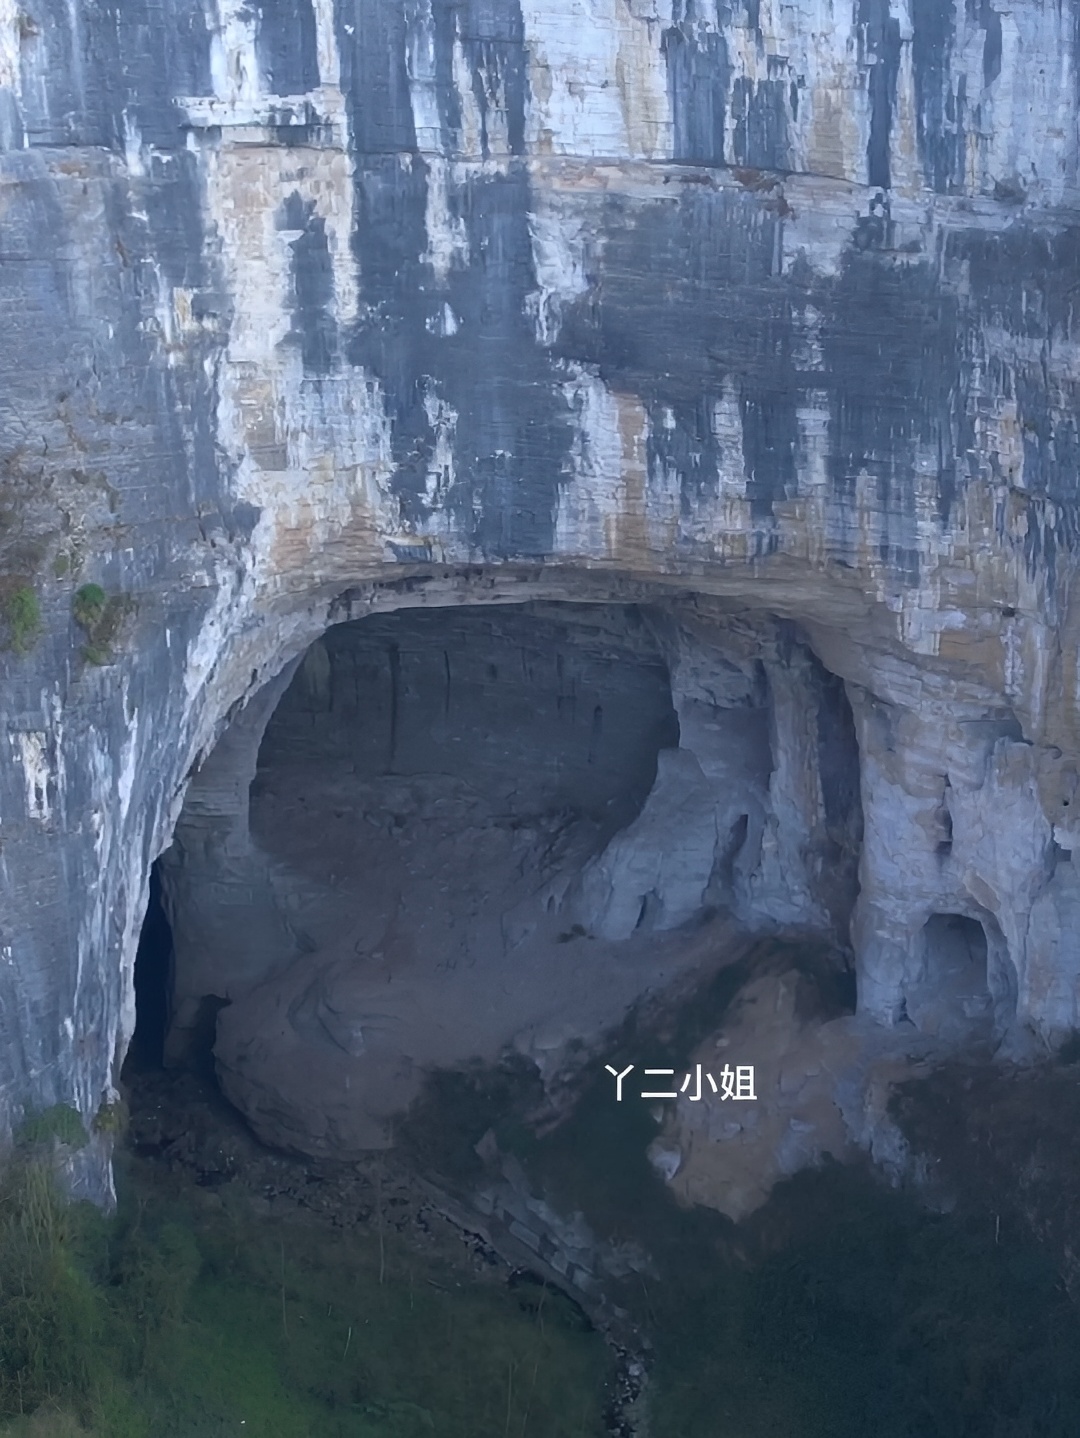 大山深处发现一个神秘山洞，路过听说洞内经常出现奇怪的声音，山洞里究竟藏了什么 #探索发现 #山洞里到